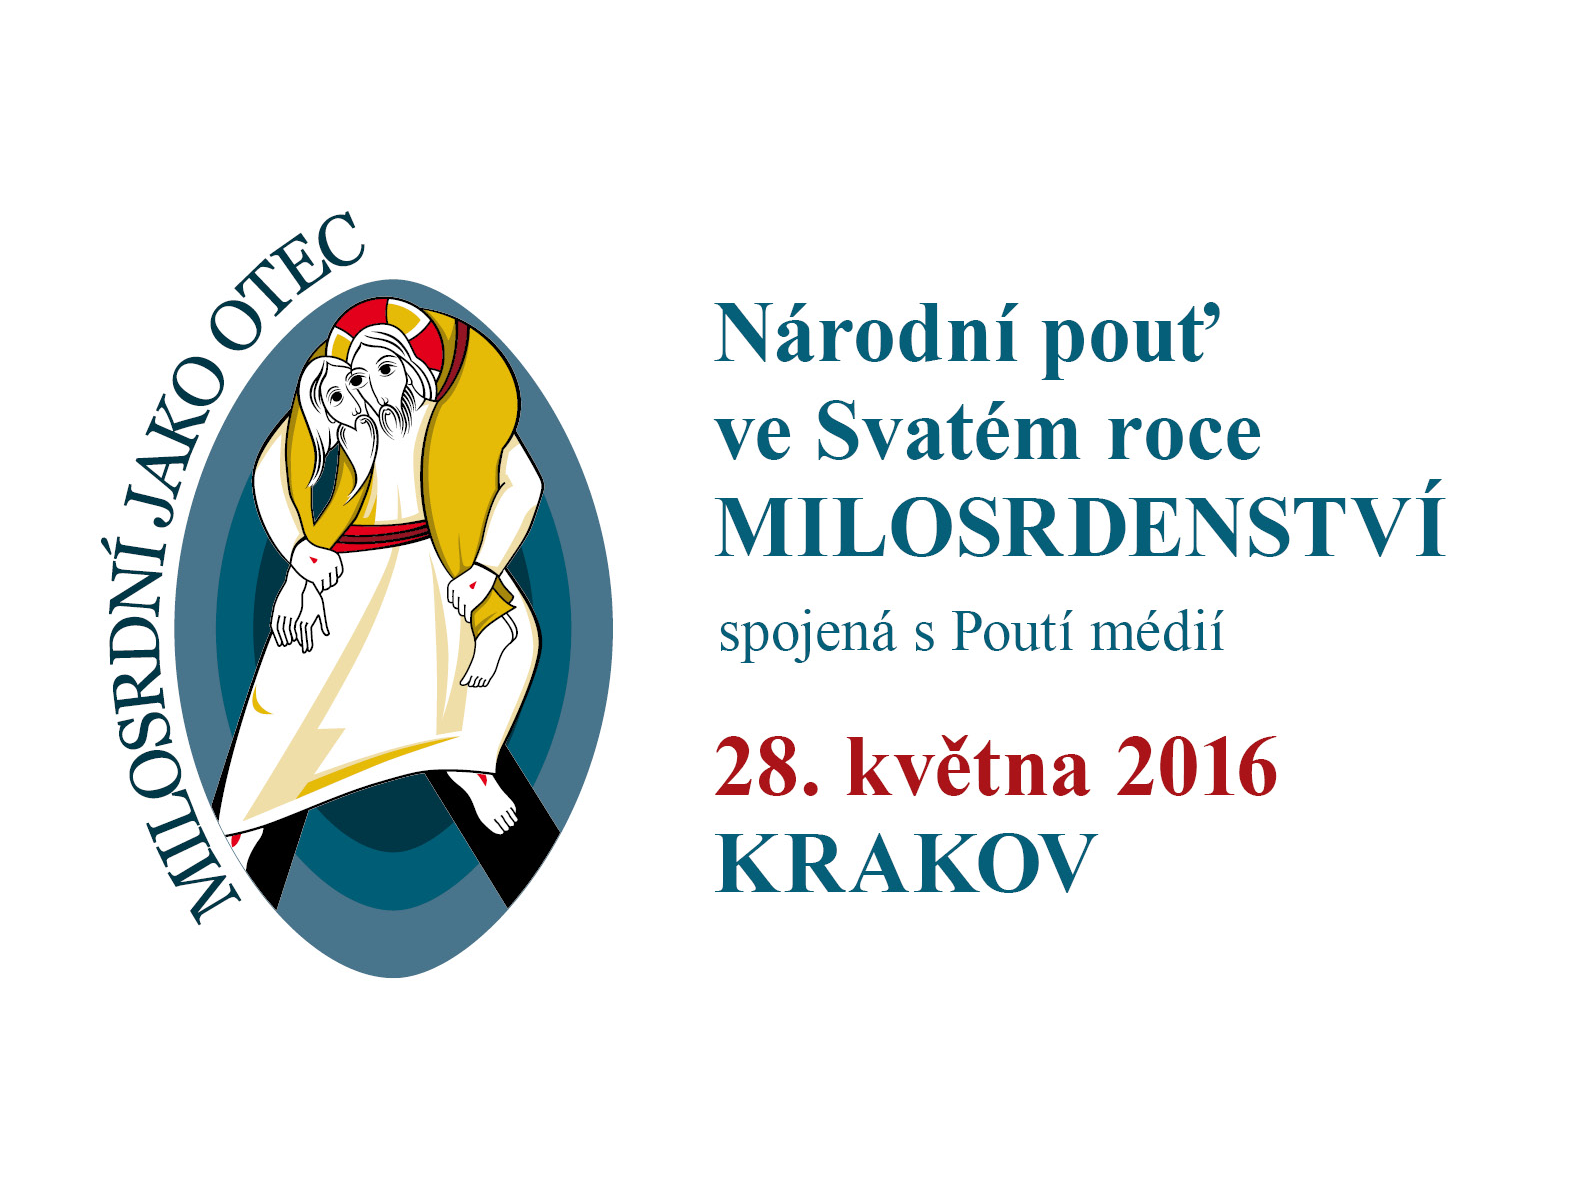 Národní pouť do Krakova ve Svatém roce milosrdenství